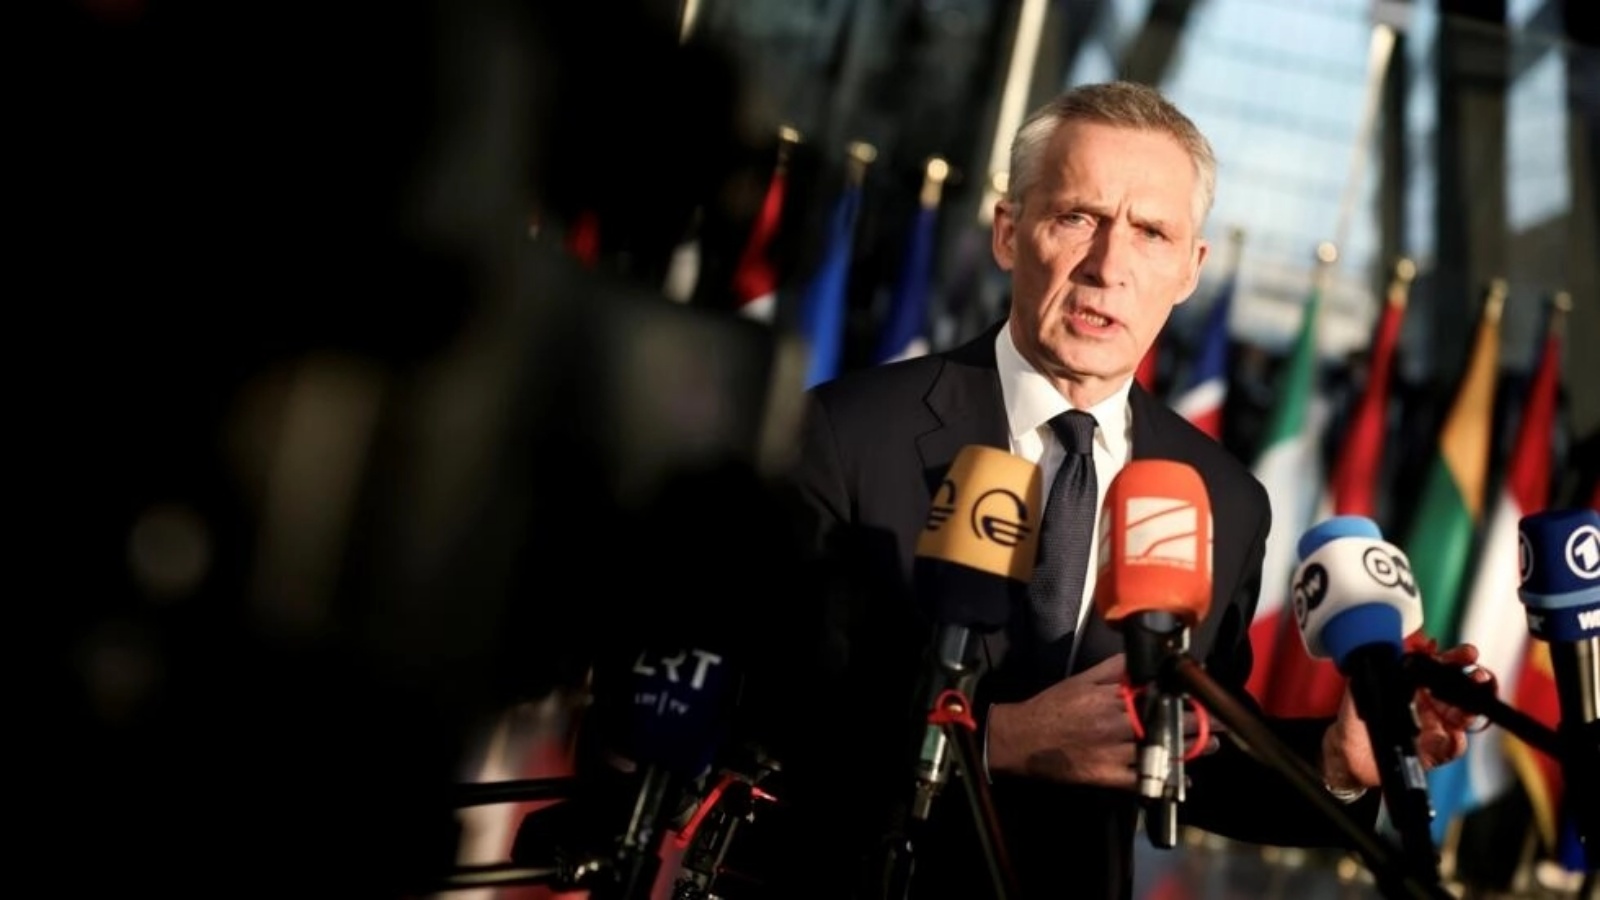 الأمين العام لحلف شمال الأطلسي ينس ستولتنبرغ يجيب على أسئلة الصحافيين عند وصوله إلى مقر الناتو في بروكسل في 14 فبراير 2023 